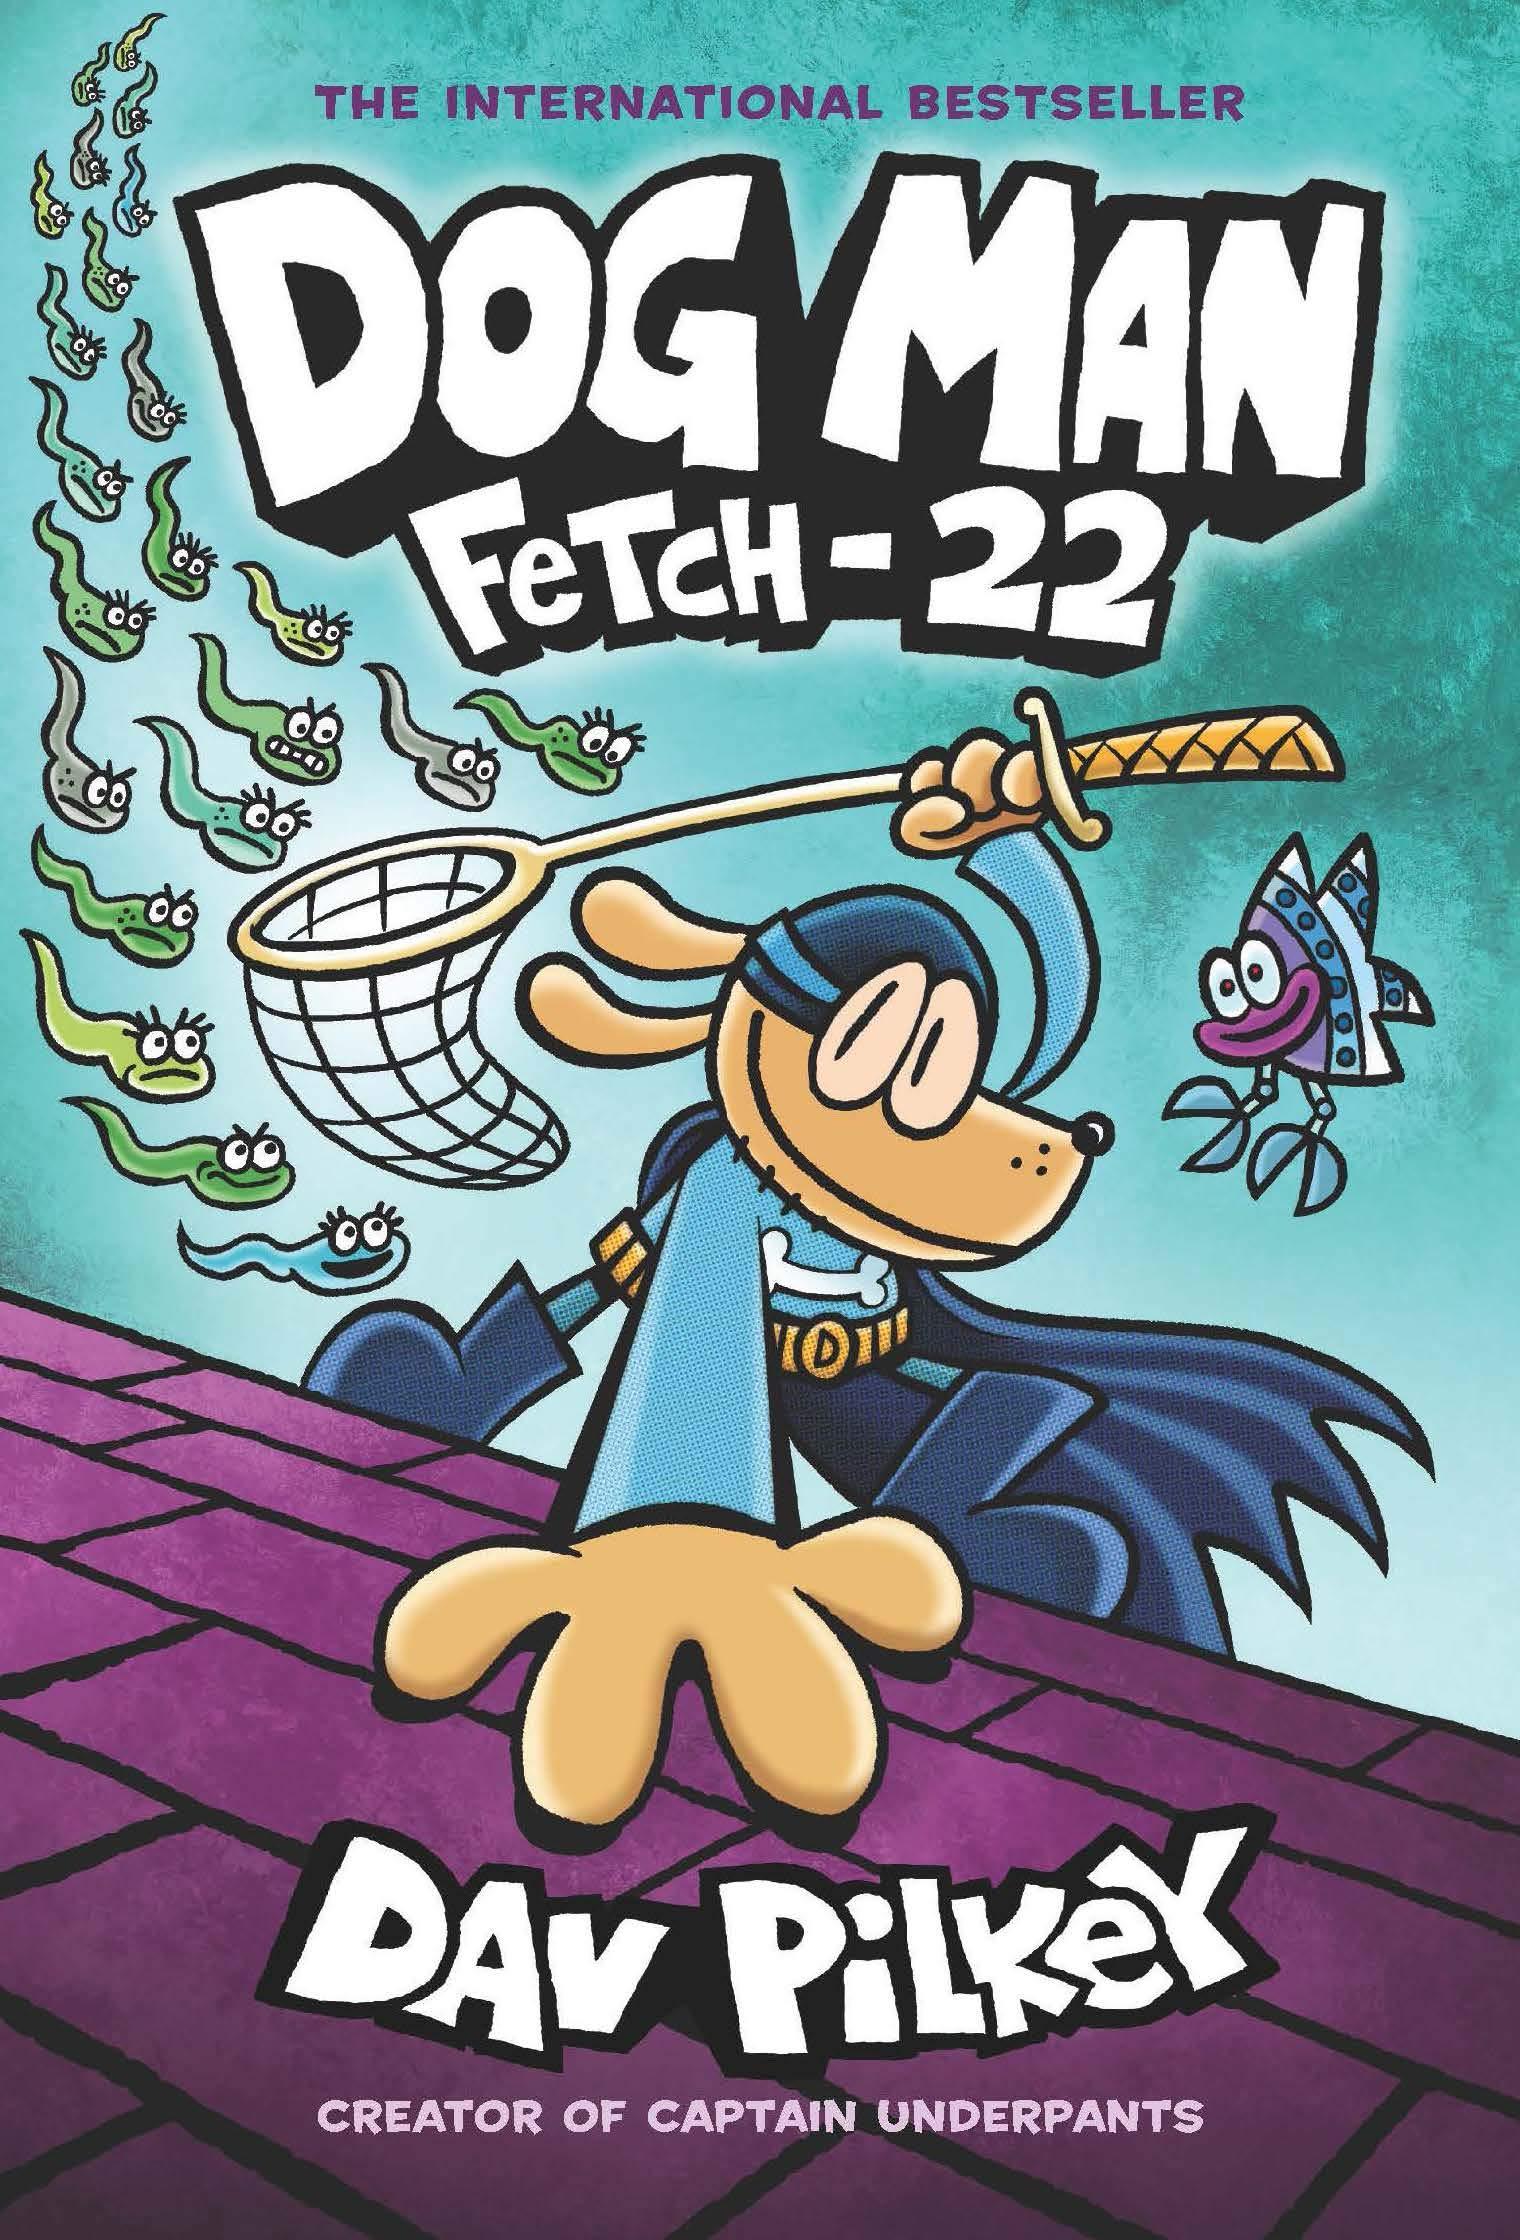 Dog Man #8 Fetch-22